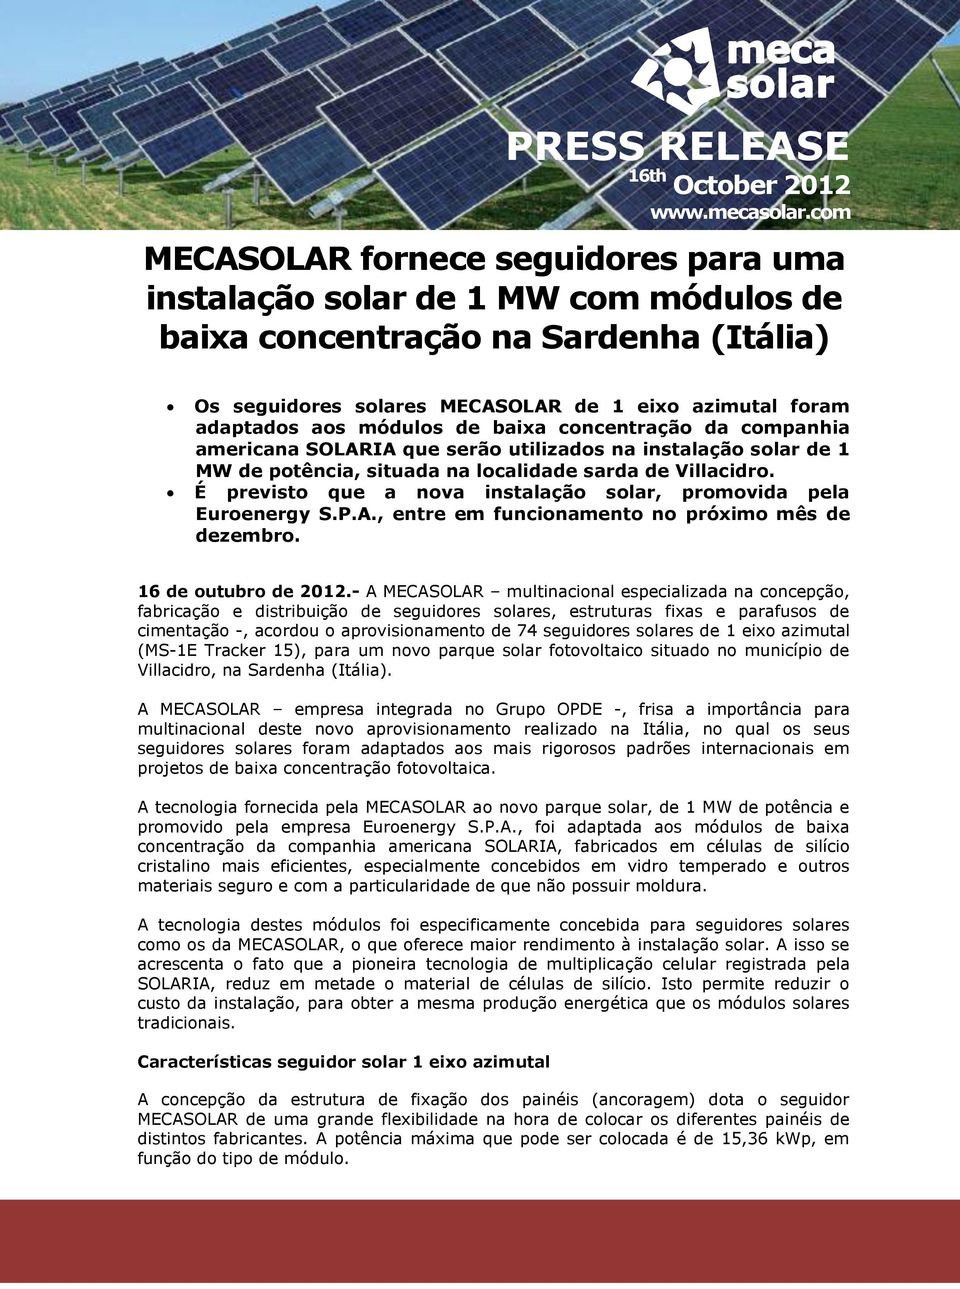 módulos de baixa concentração da companhia americana SOLARIA que serão utilizados na instalação solar de 1 MW de potência, situada na localidade sarda de Villacidro.